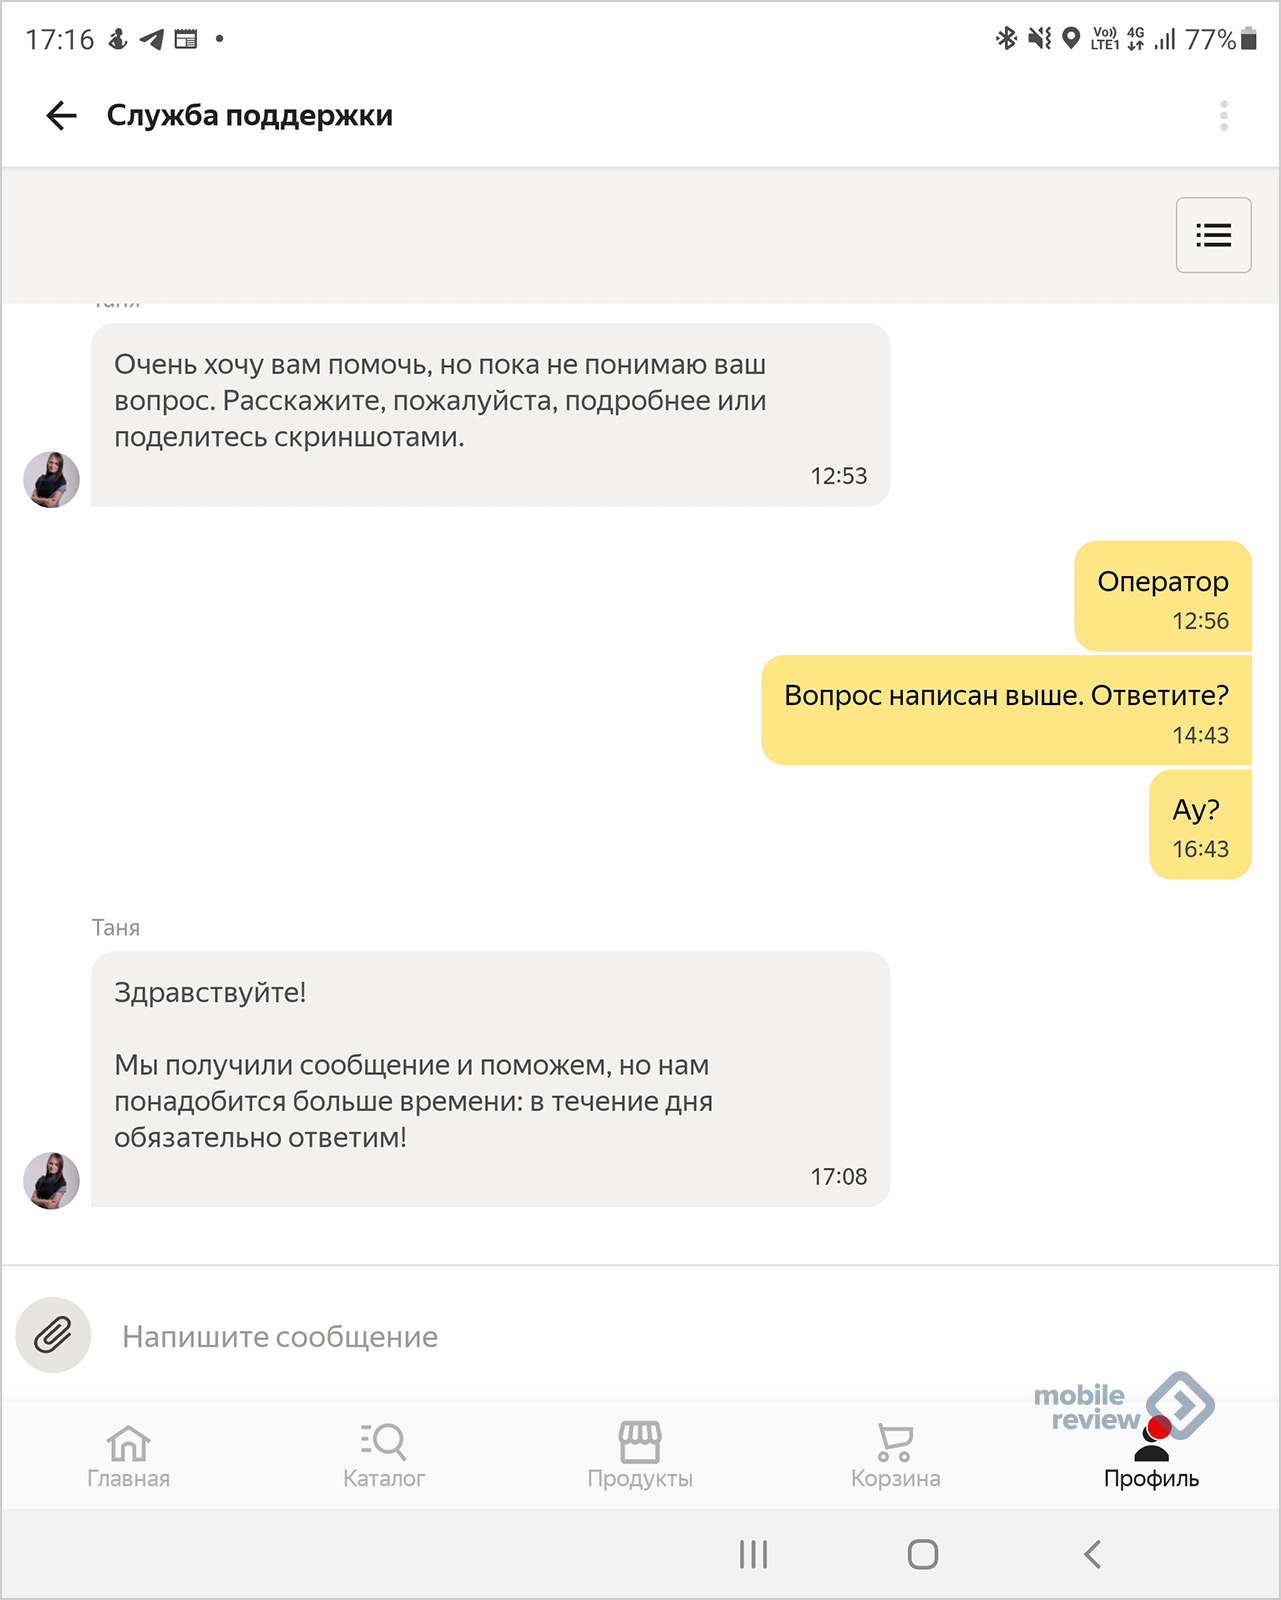 Яндекс поддержка маркетплейса своя компания кафе франшиза